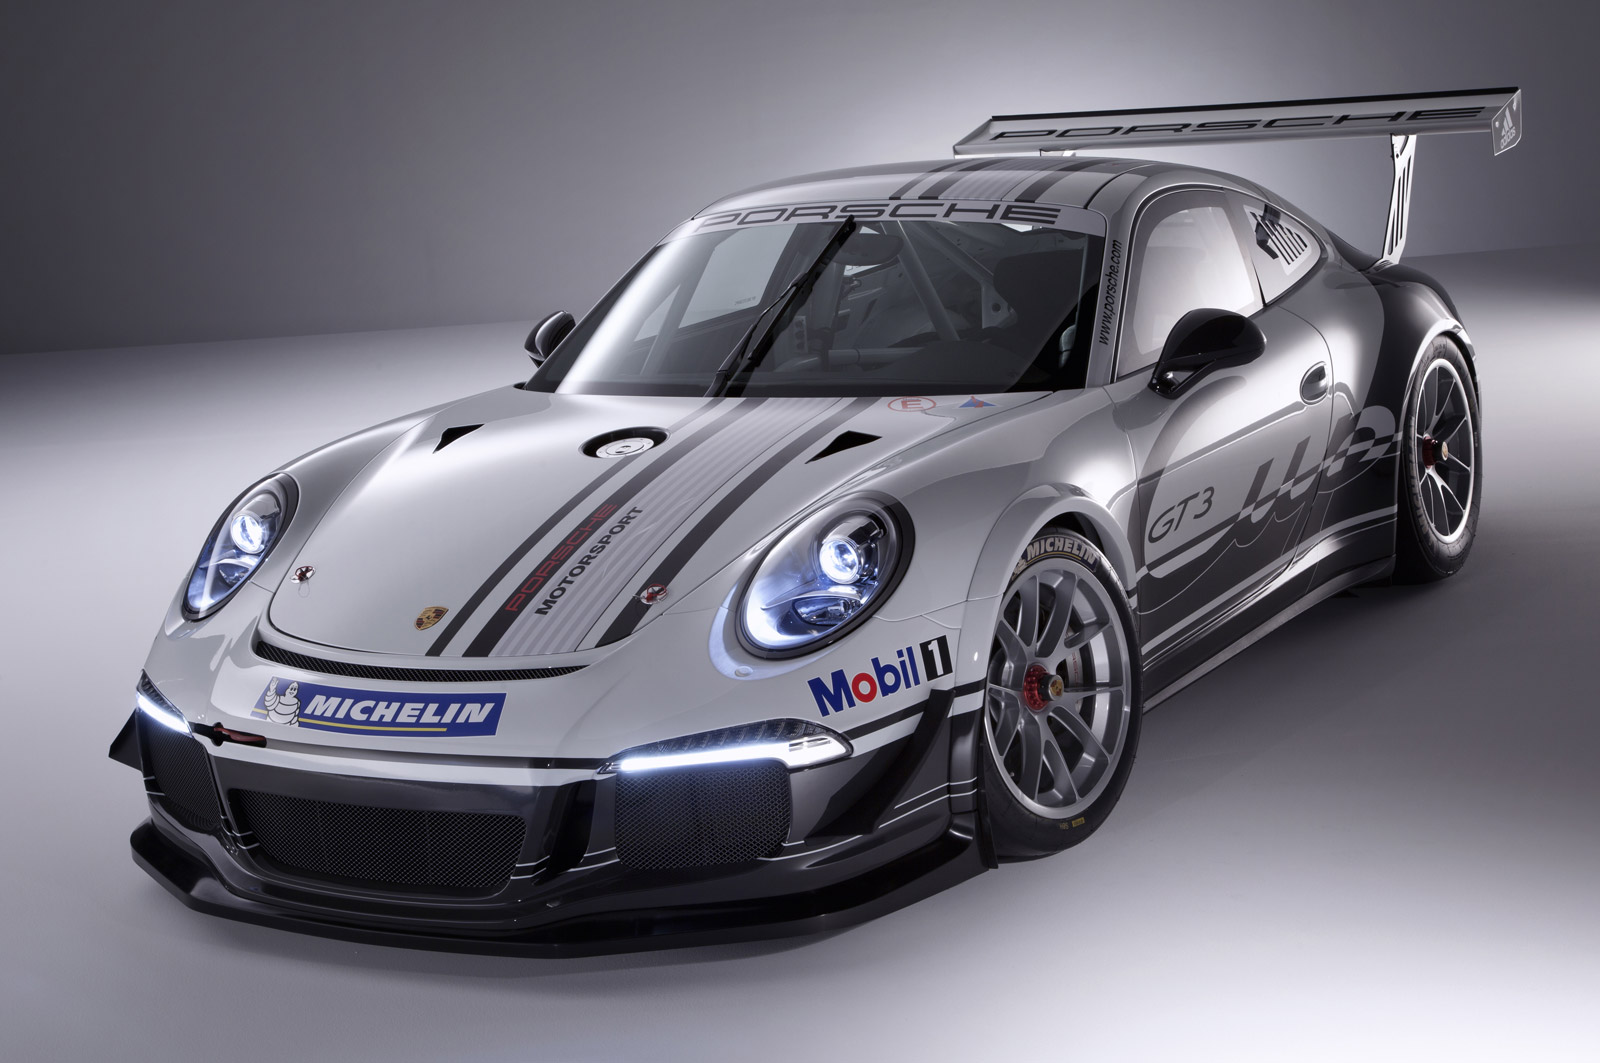 2013 Porsche 911 GT3 Cup Race Car Revealed